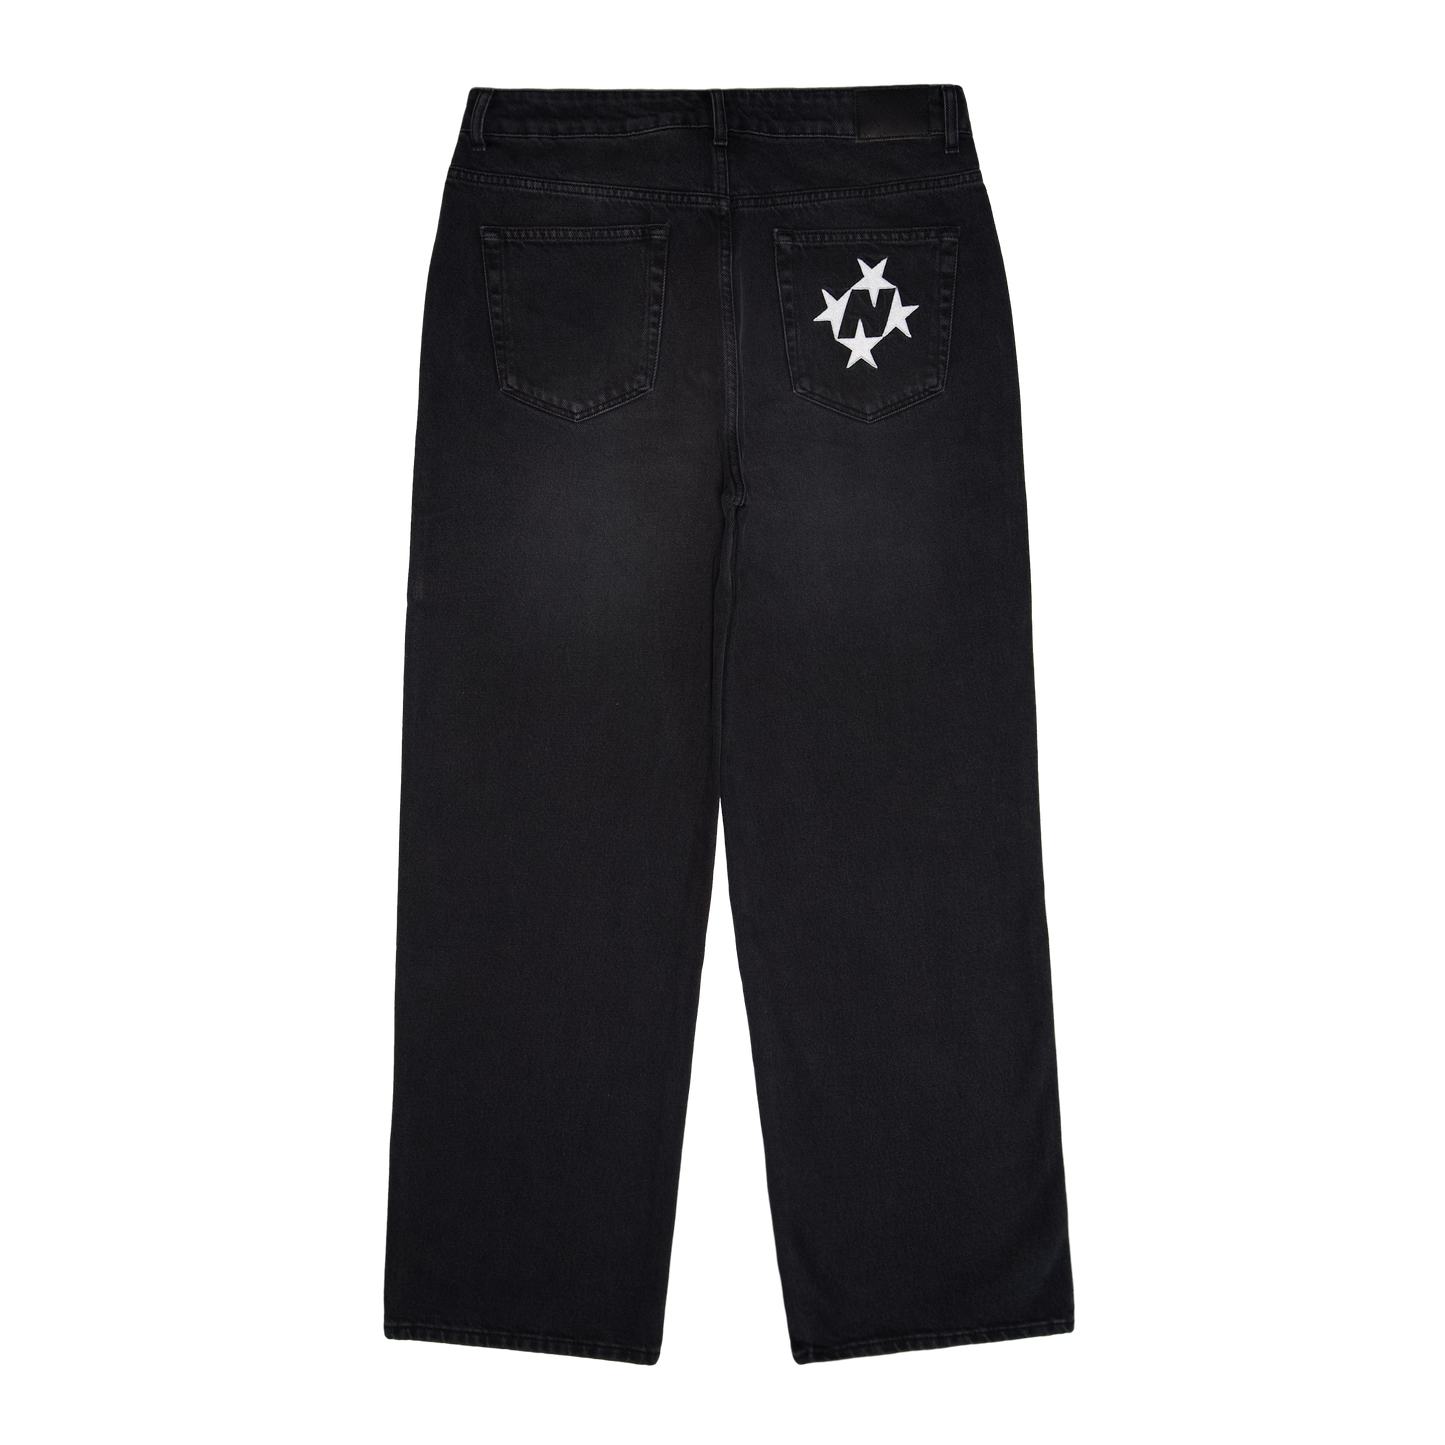 Shining Stars Jeans [Washed Black] – 99Based